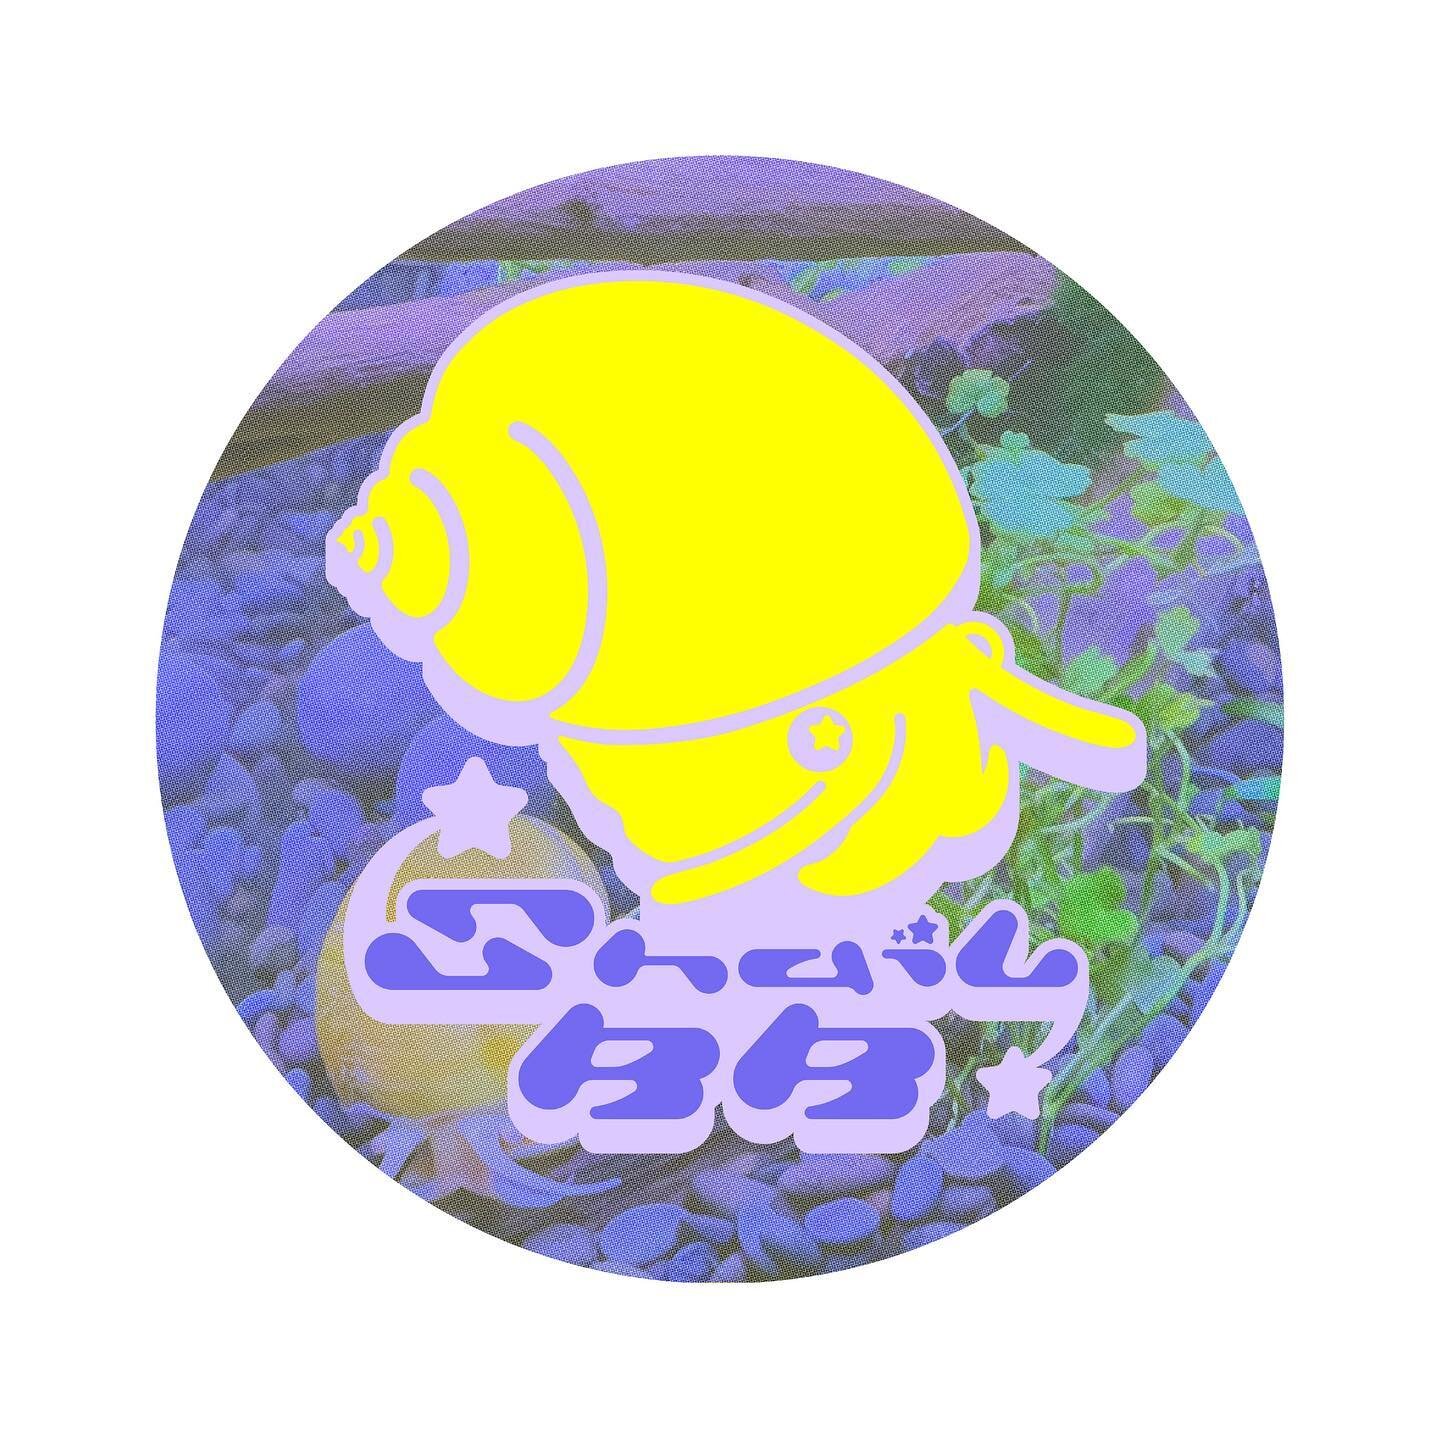 ☆.*・(๑╹ᆺ╹) SNAIL BB (╹ᆺ╹ ๑)・*.☆
After making the Shrimp bbs their logo my snails got jealous, so I HAD to make one for their hyper-pop band: Lead power couple - Mr. and Mrs. Goldie and band mates Astro and Banana Pepper 💫

☆.*・(๑╹ᆺ╹) ・*.☆

Modified 